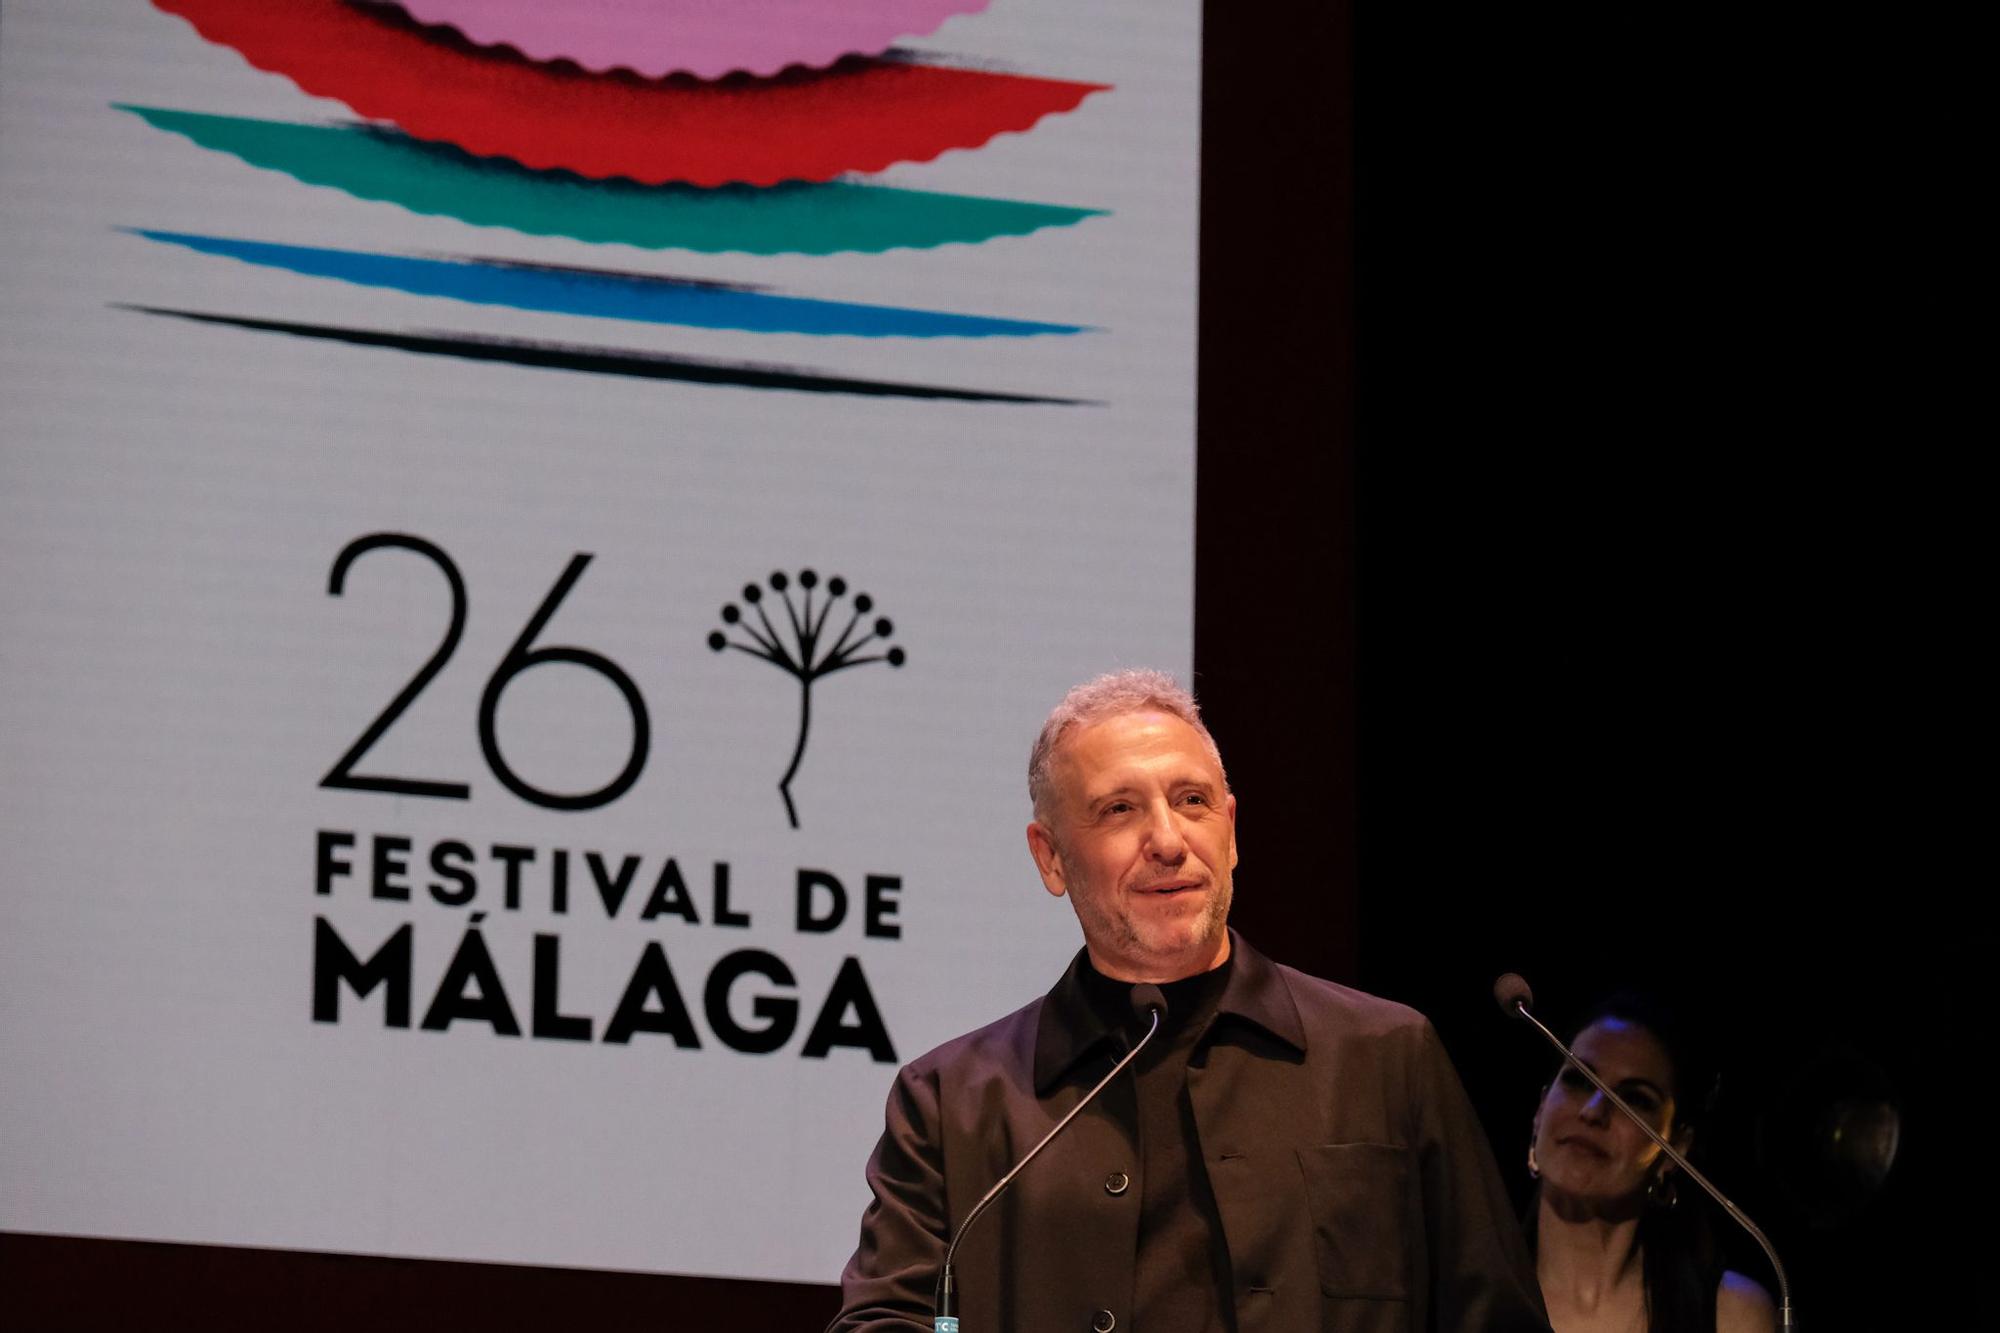 El Festival reconoce a la 'script' Yuyi Beringola con el Premio Ricardo Franco